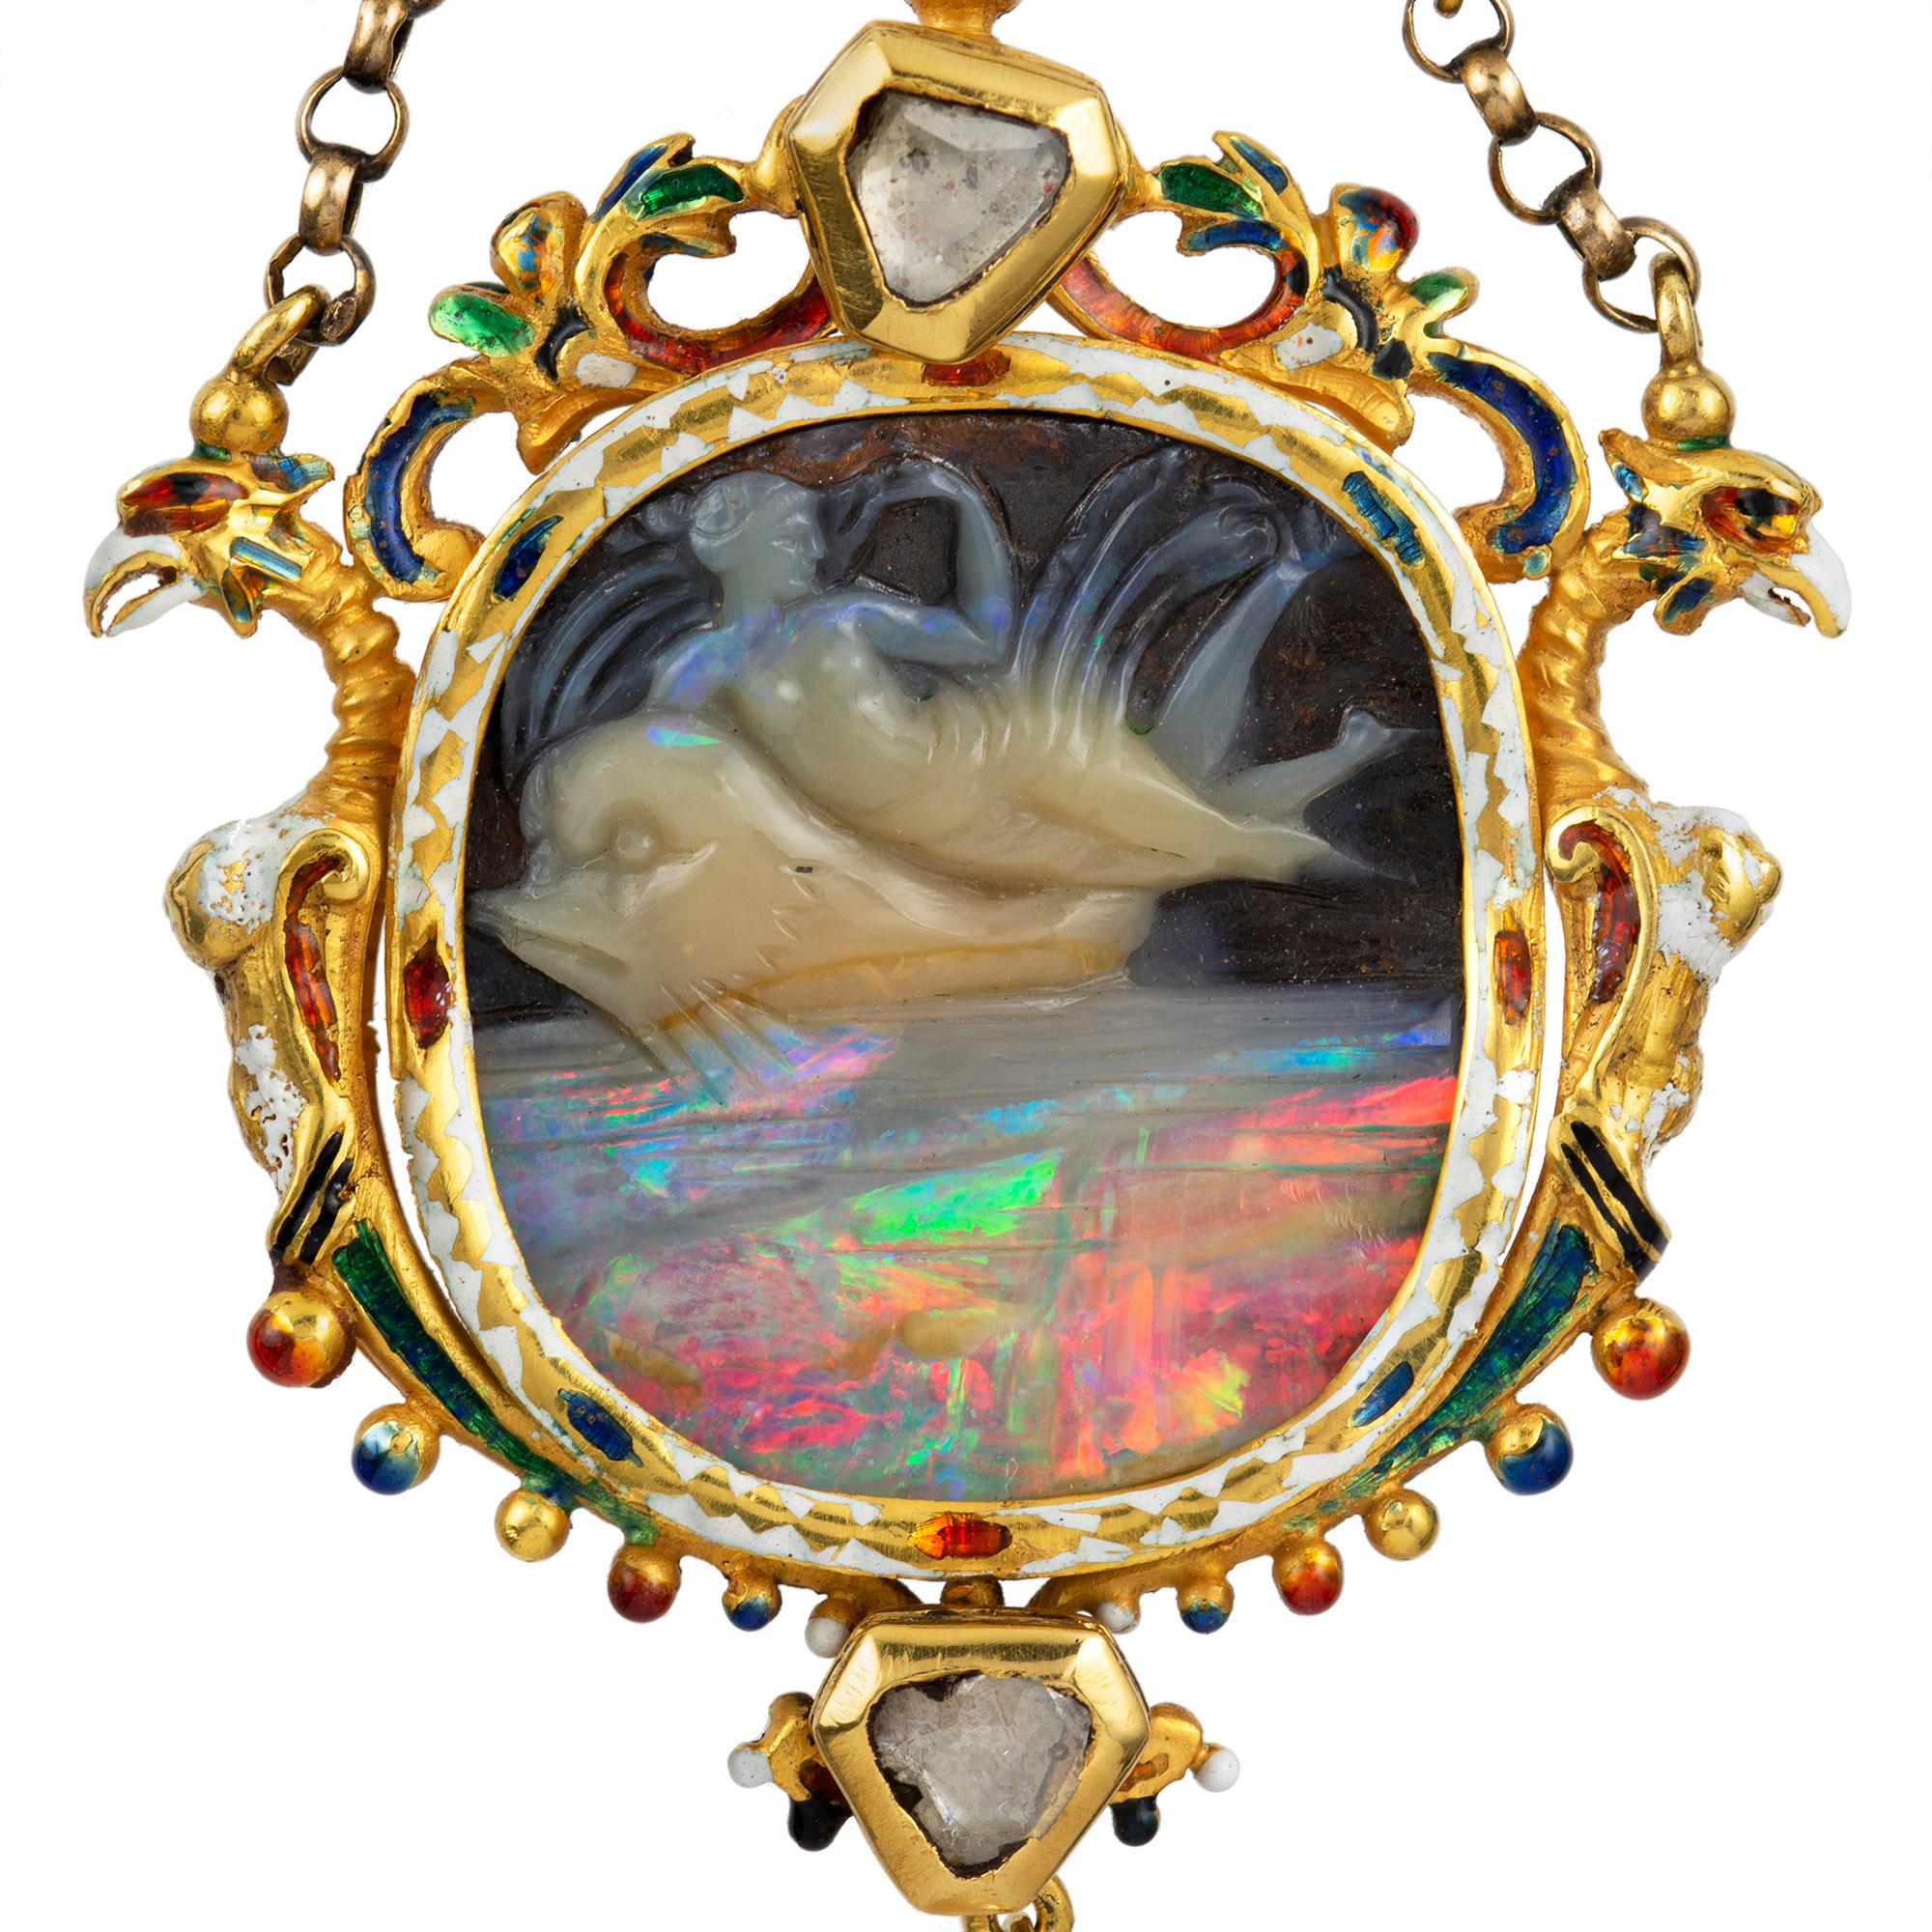 Pendentif camée en opale sculptée de style Renaissance, le camée attribué à Wilhelm Schmidt représentant Arion chevauchant un dauphin, à l'entourage élaboré de style Renaissance incorporant des volutes et deux griffons, portant des décorations en